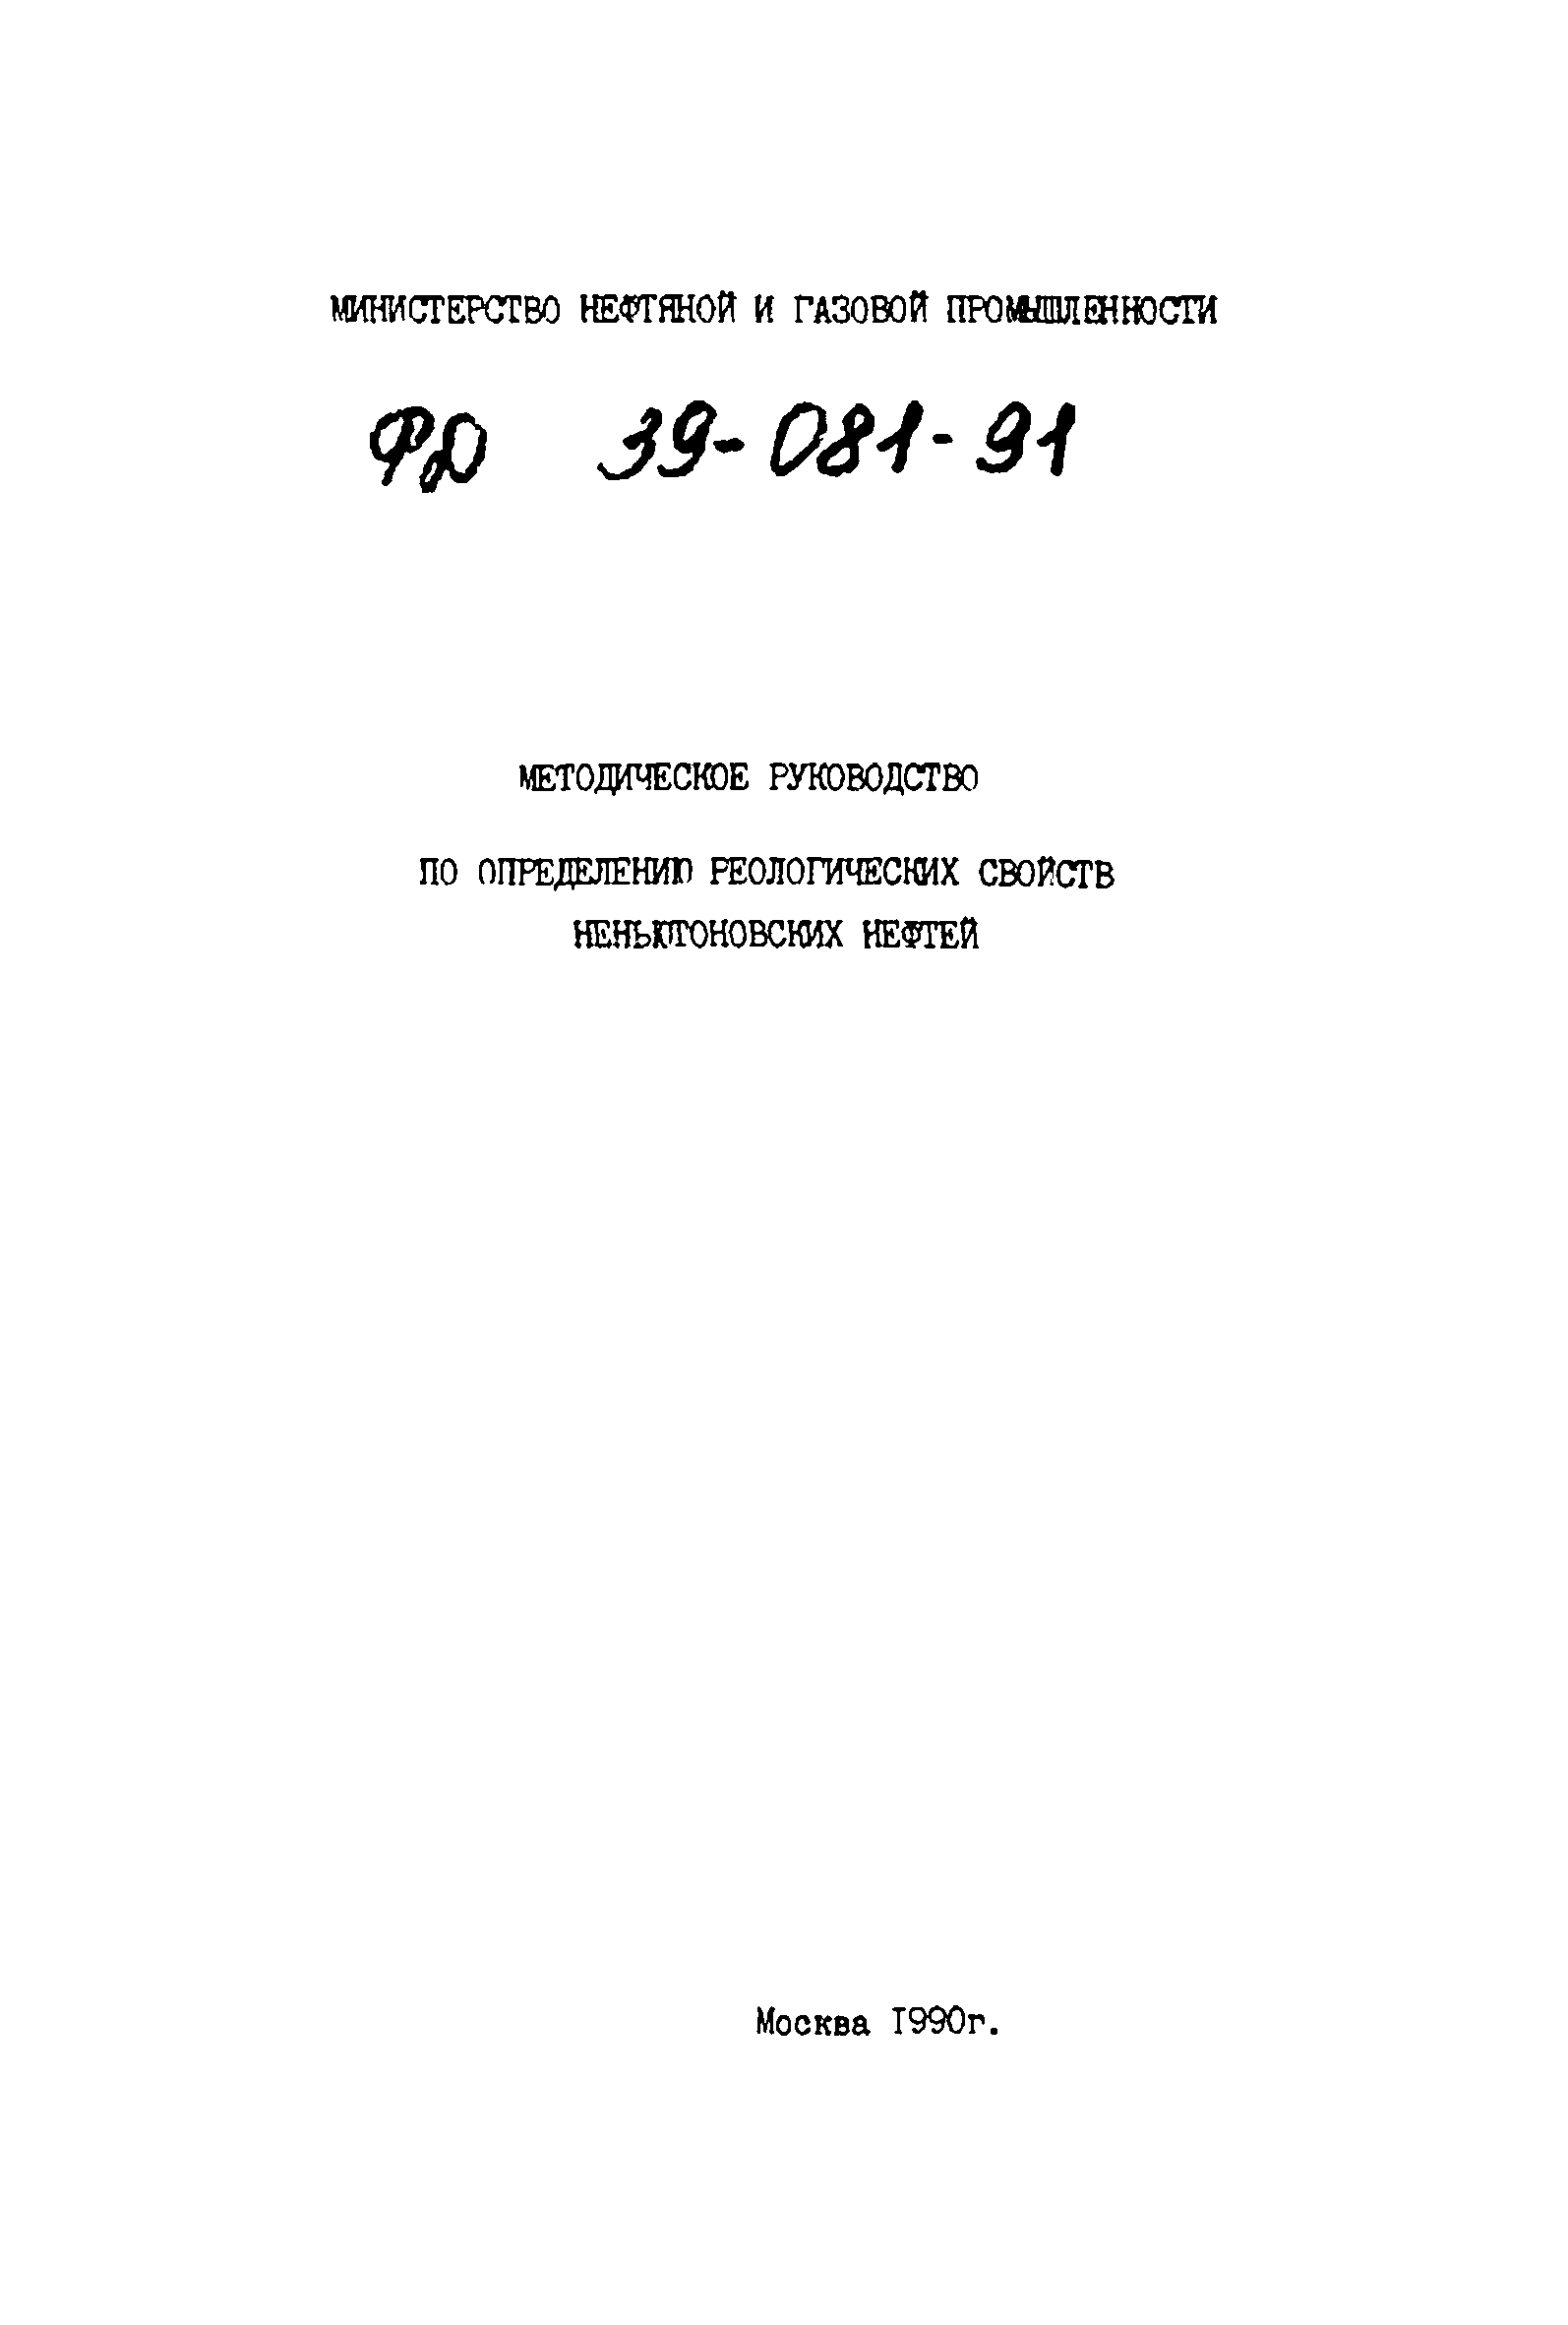 РД 39-081-91